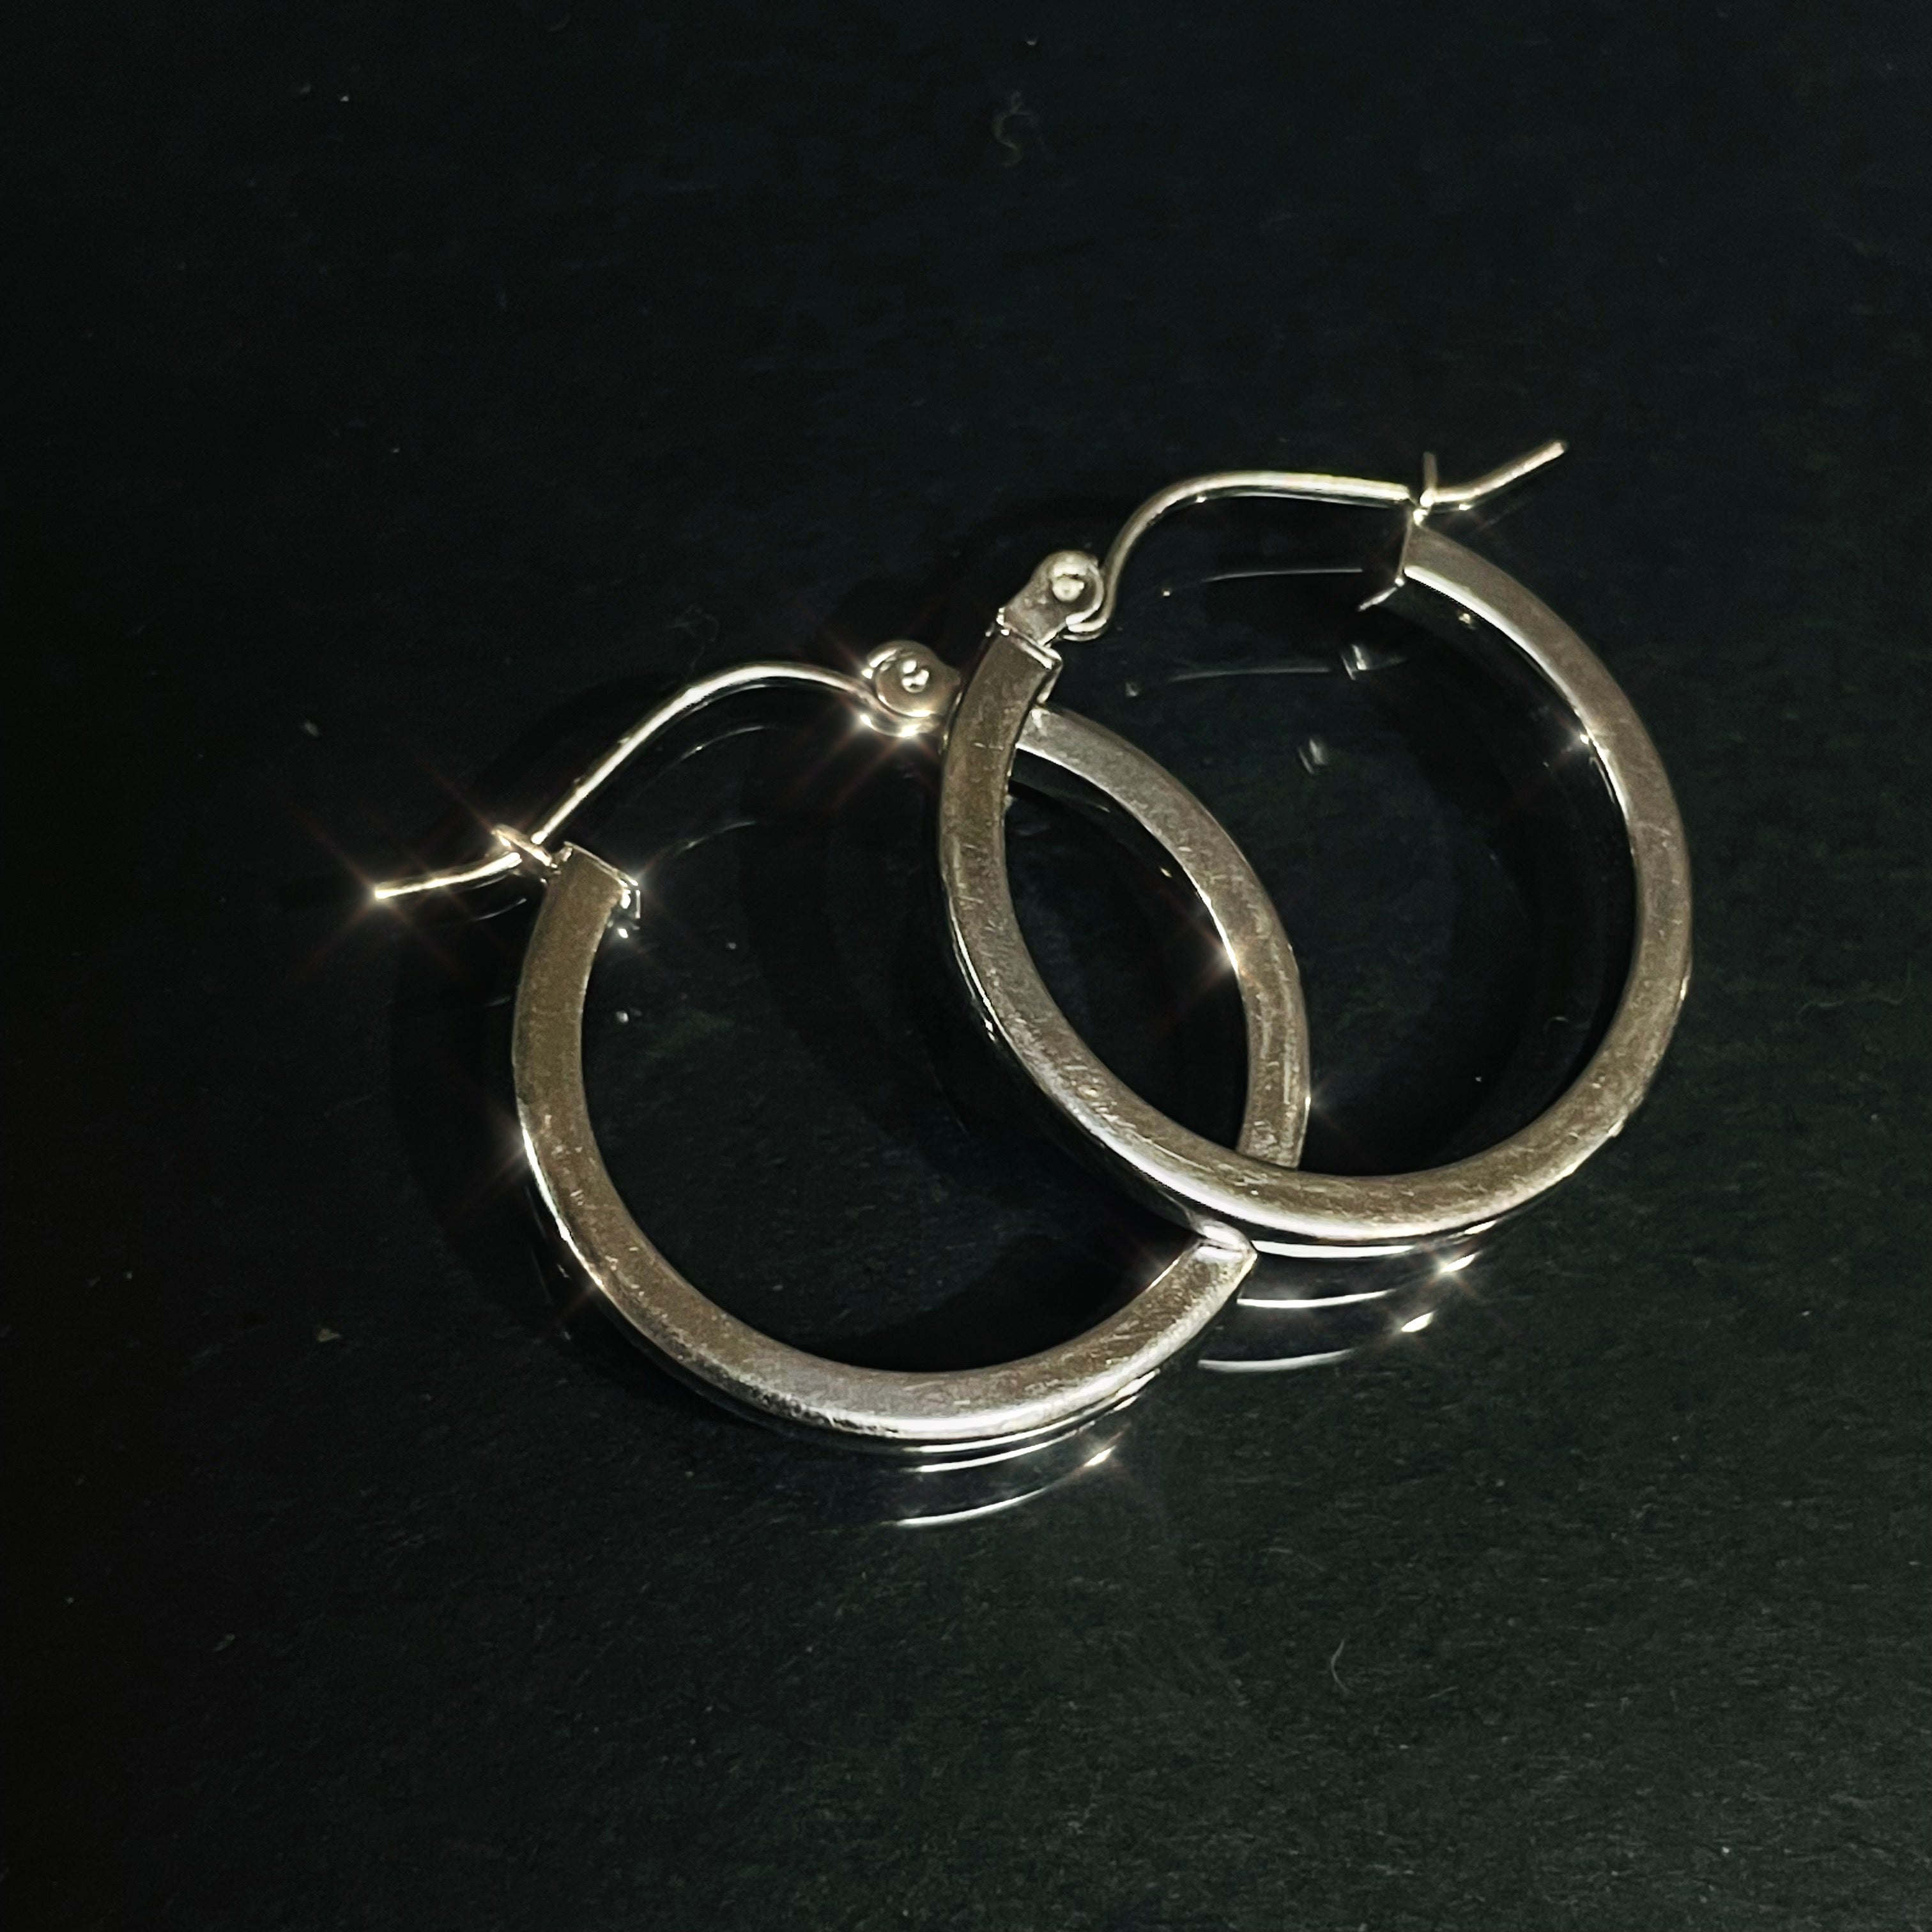 .80” 2mm 14K White Gold Sleek Squared Hoop Earrings